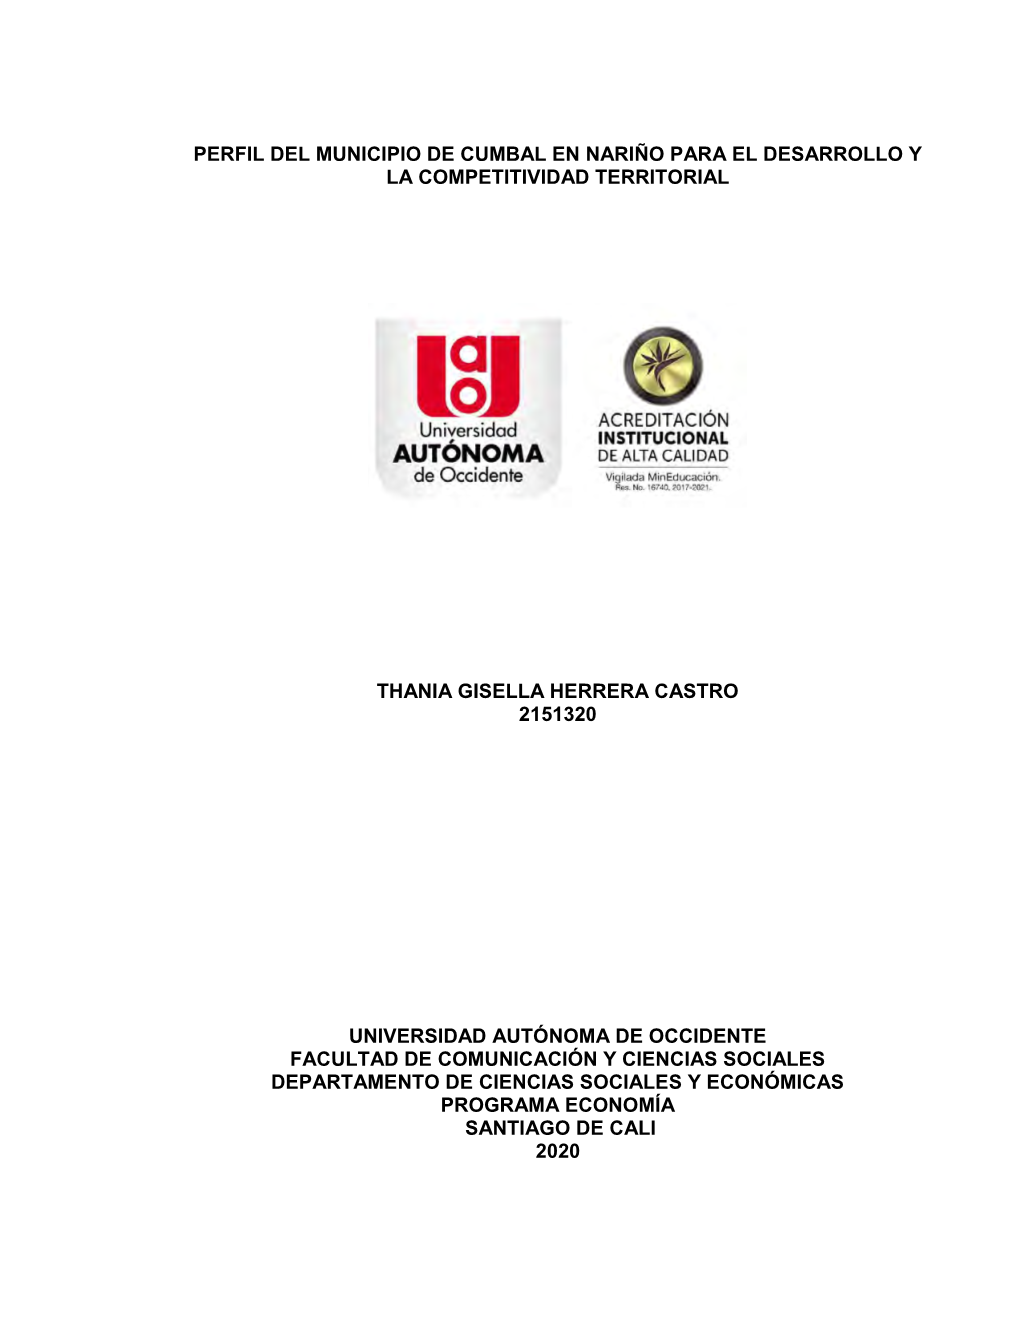 Perfil Del Municipio De Cumbal En Nariño Para El Desarrollo Y La Competitividad Territorial Thania Gisella Herrera Castro 2151